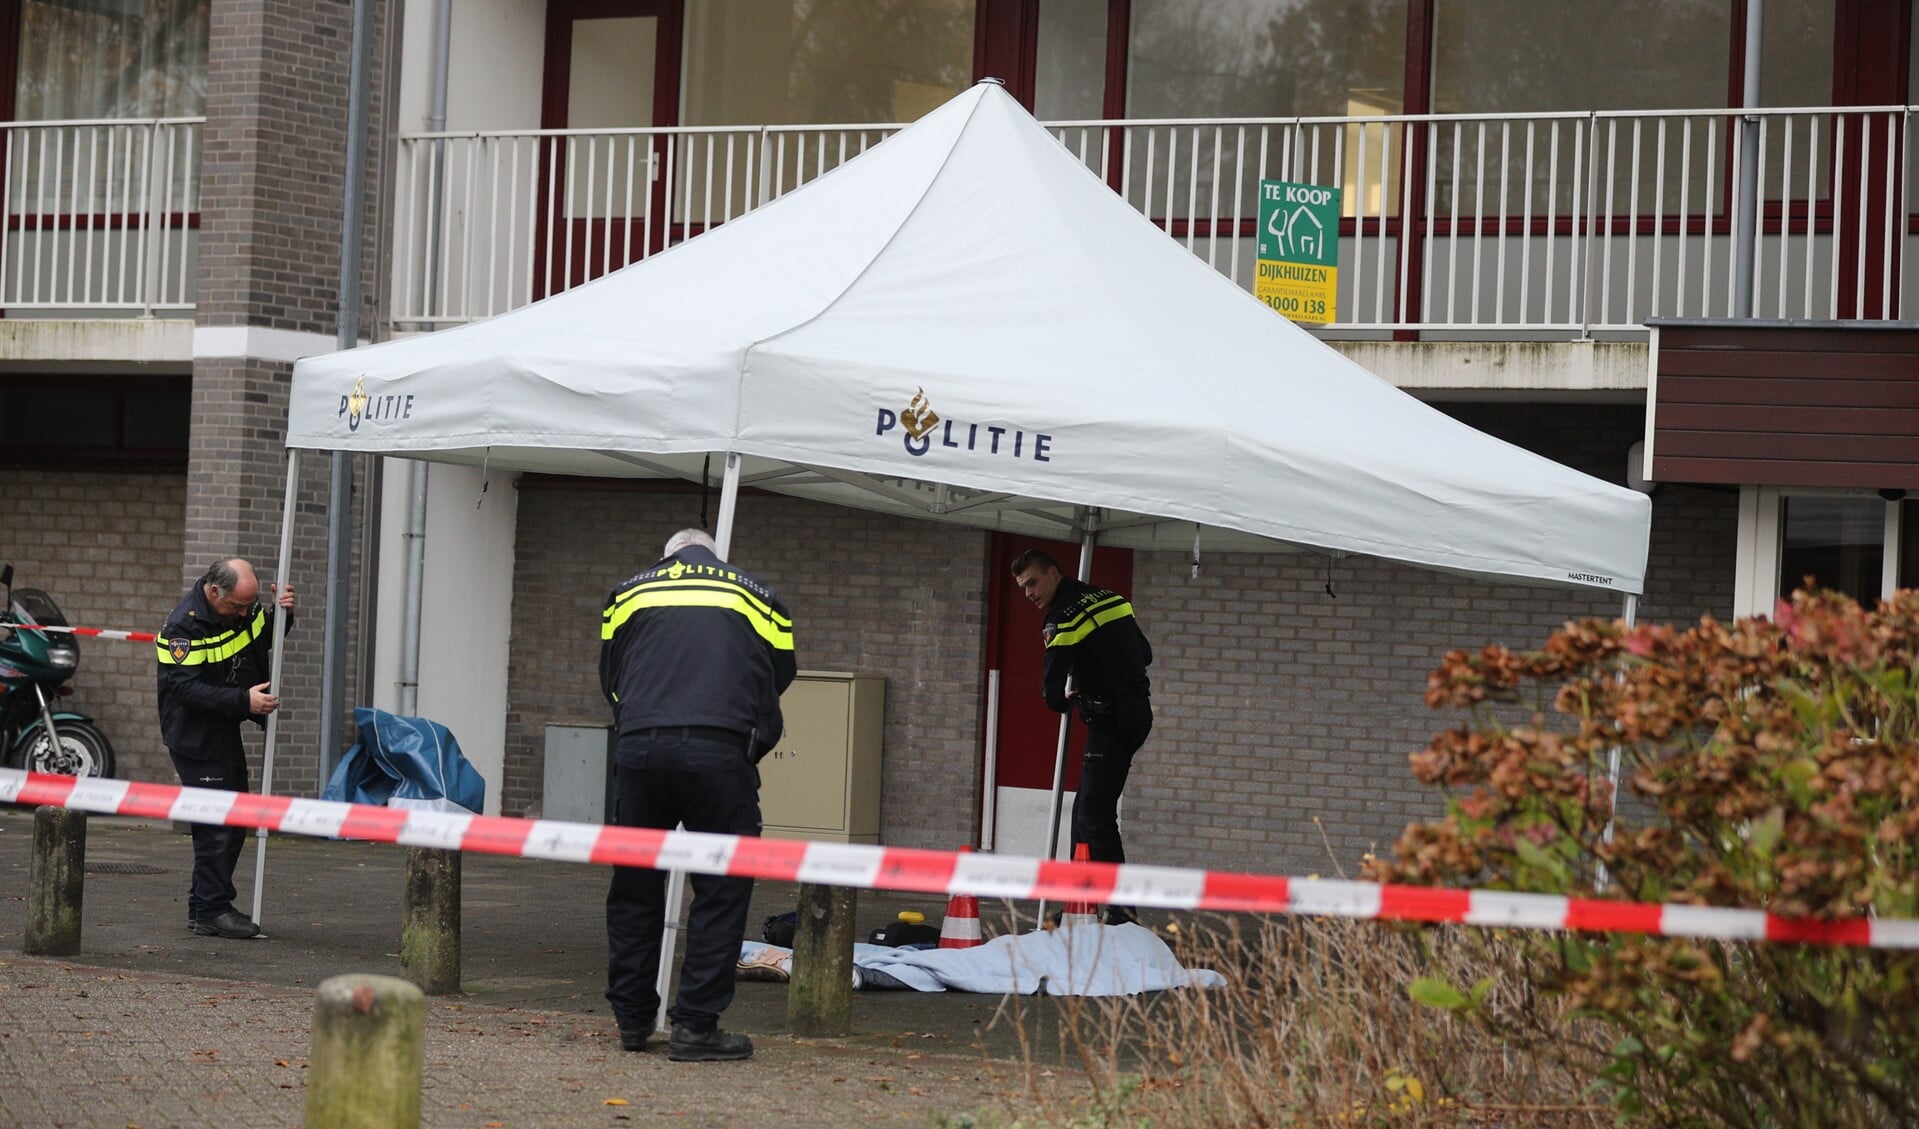 Ten behoeve van het onderzoek werd een tent opgezet door de politie (foto: Rene Hendriks).